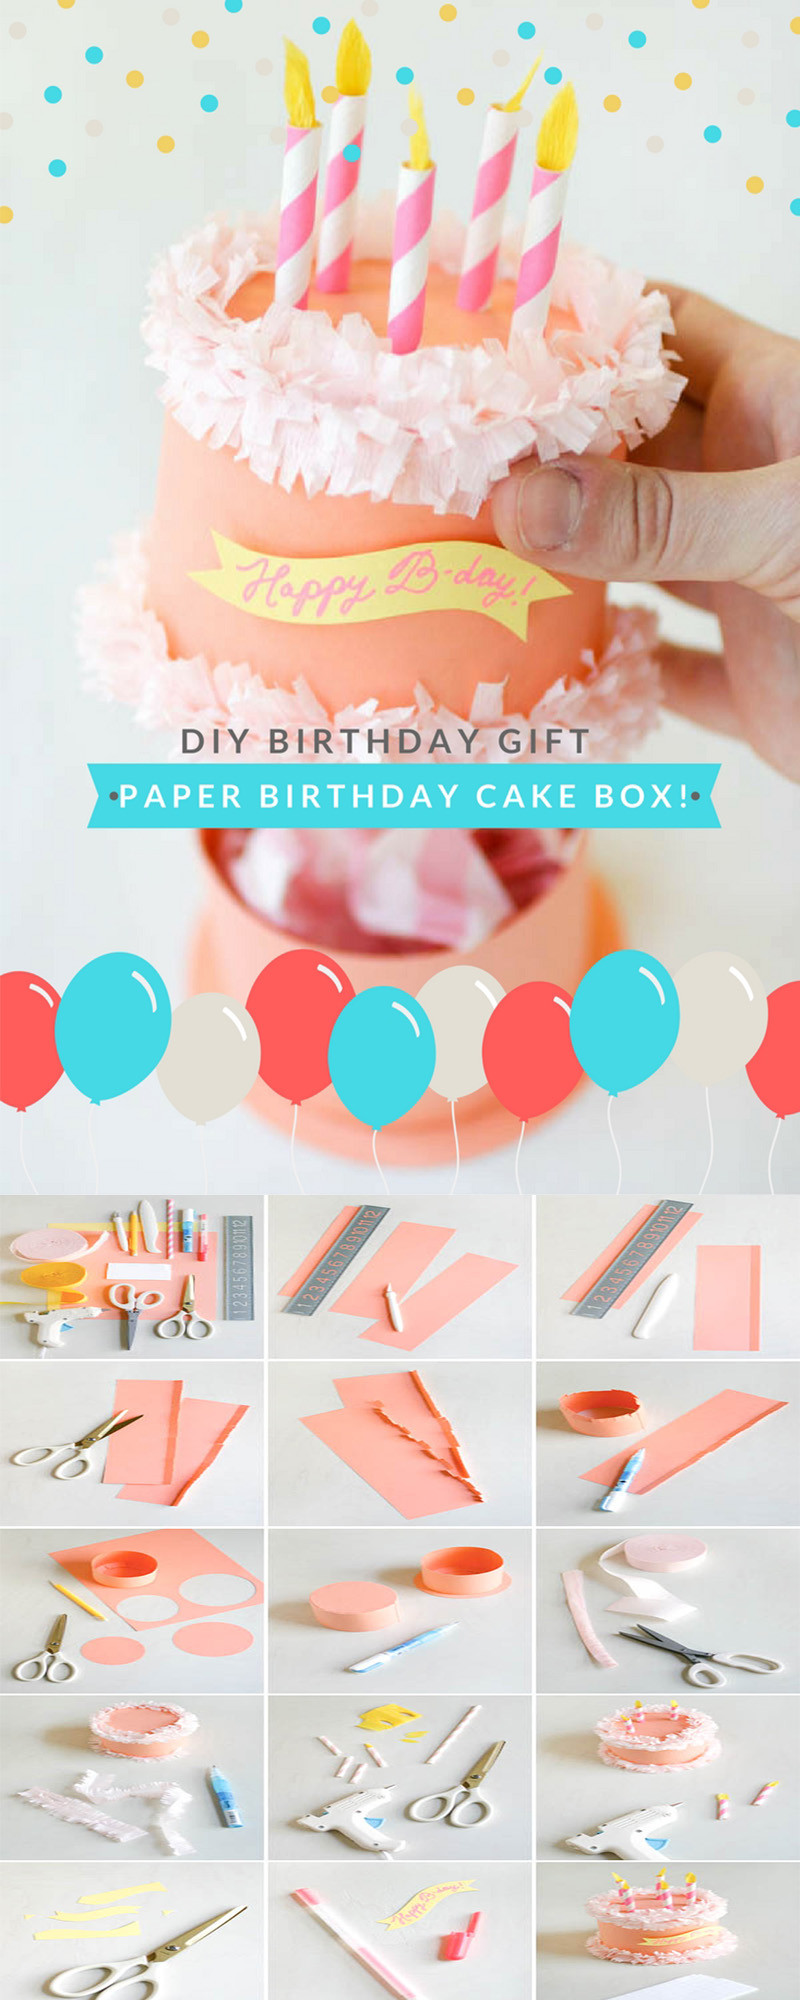 DIY Gift For Boyfriend Birthday
 DIY Gift Ideas for Your Boyfriend Paper Birthday Cake Box